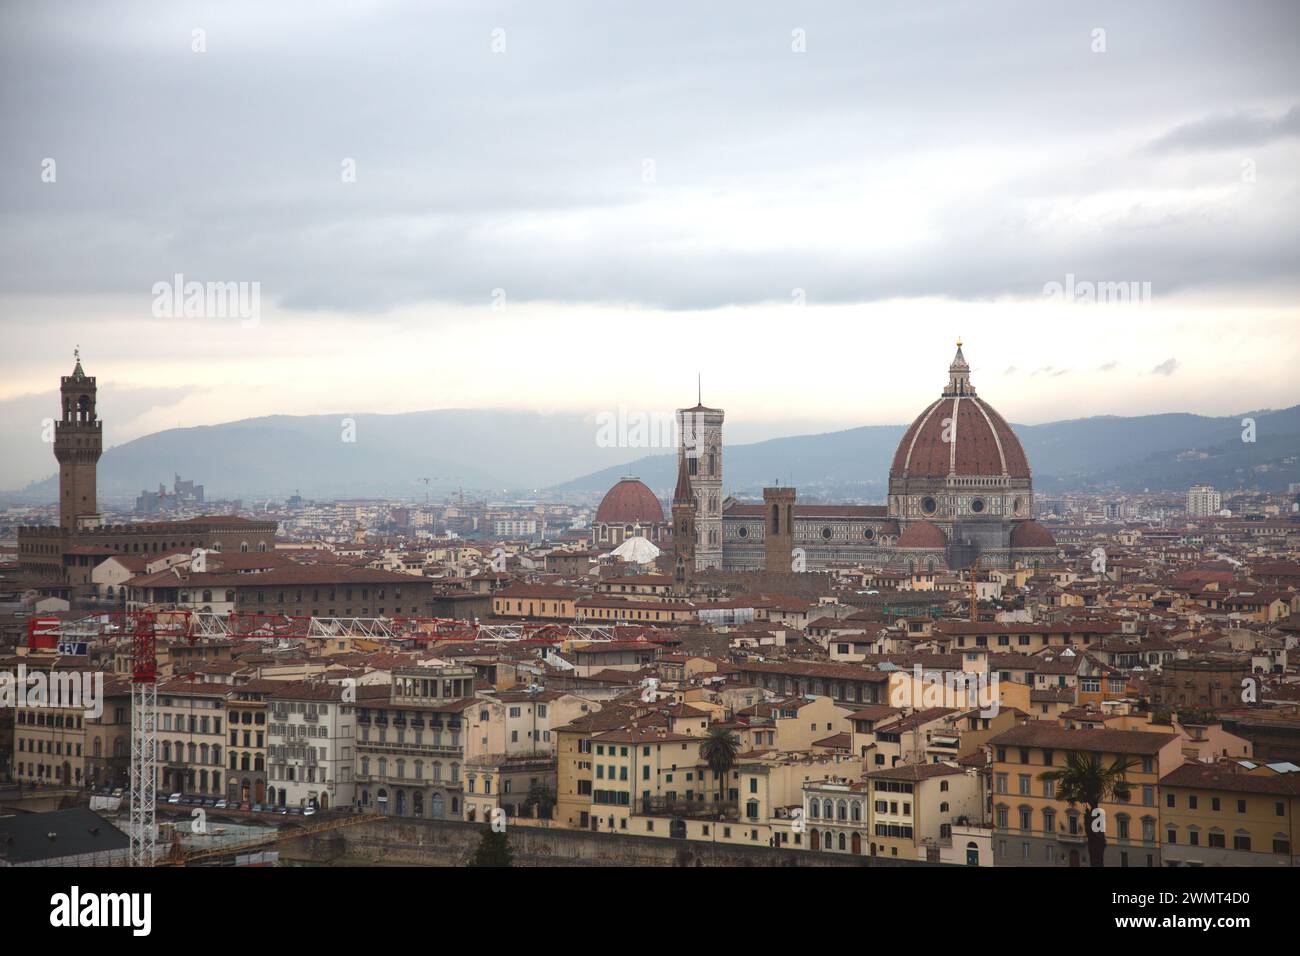 Firenze; è la capitale della Toscana italiana. Firenze era un centro del commercio e della finanza medievale europea. Foto Stock